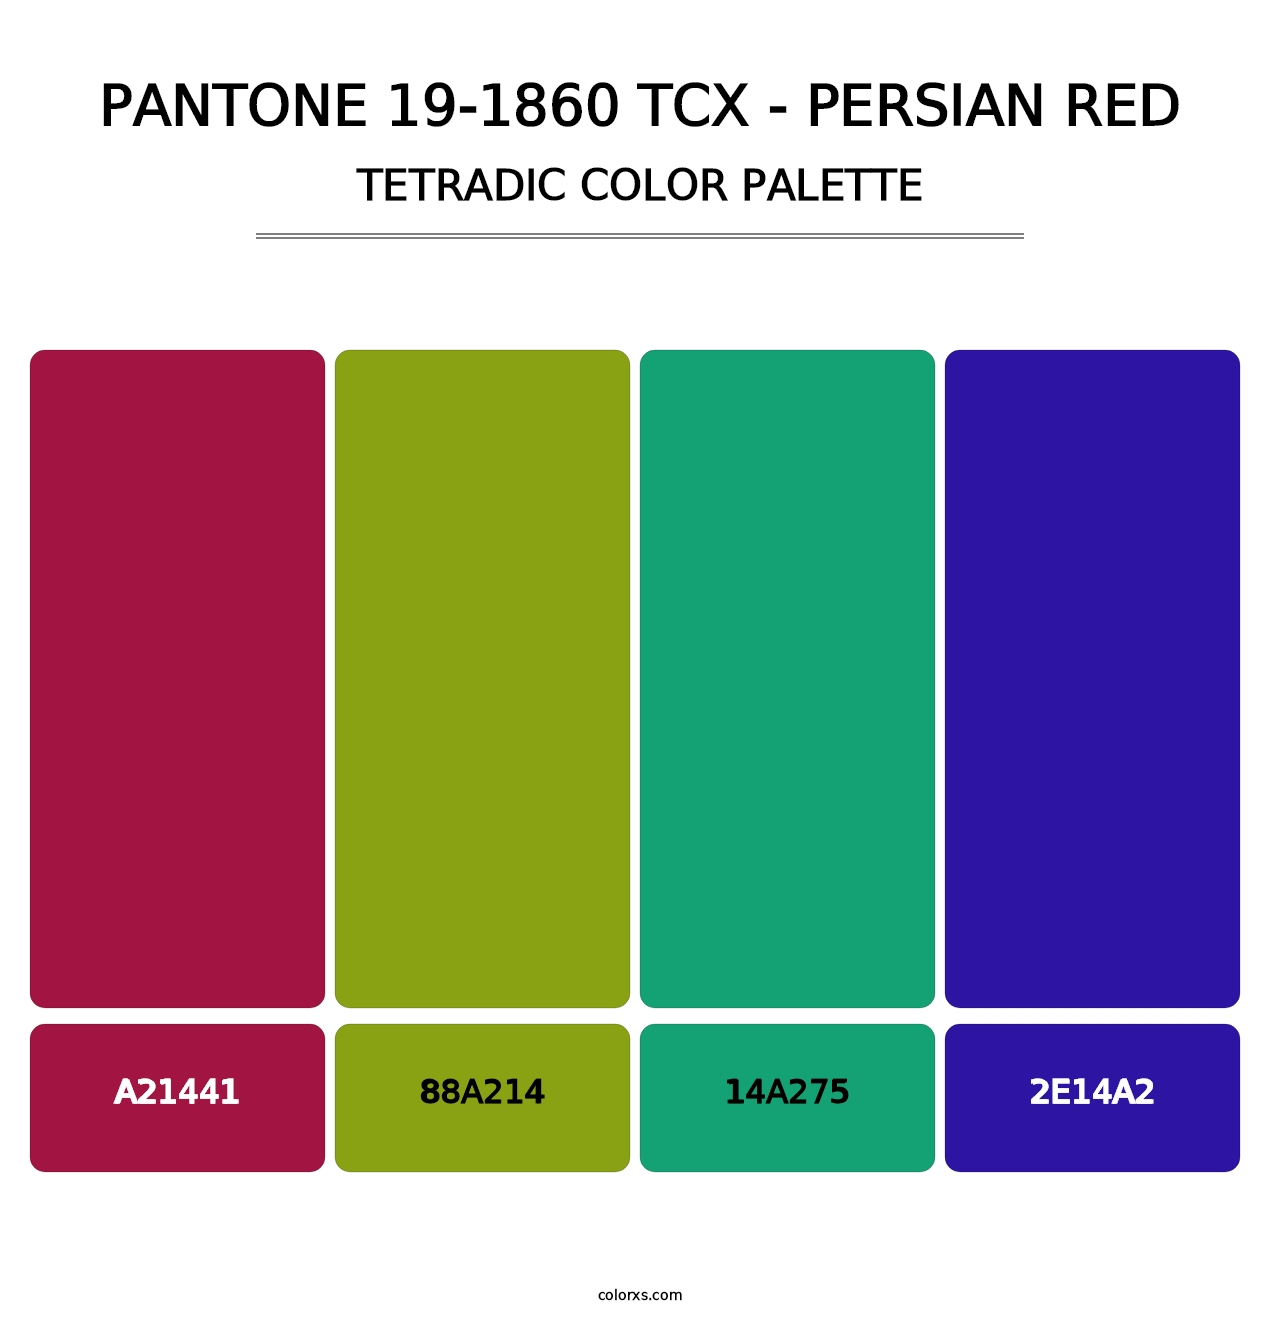 PANTONE 19-1860 TCX - Persian Red - Tetradic Color Palette